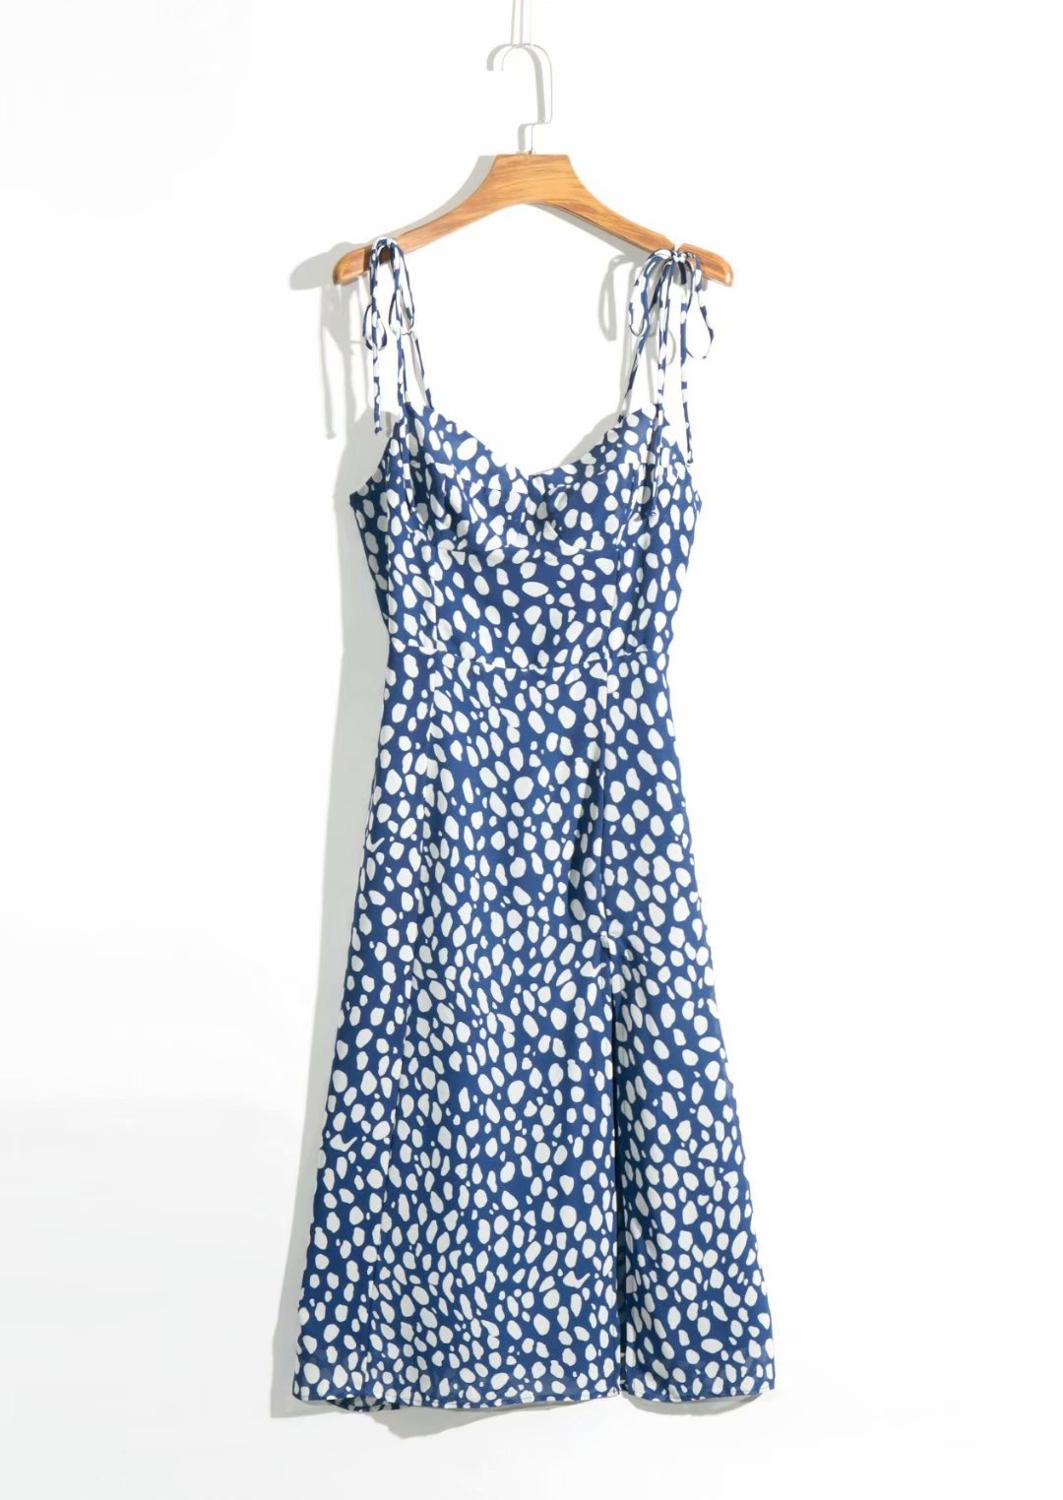 Elegant Adjust Spaghetti straps Blue Leopard Print midi dress